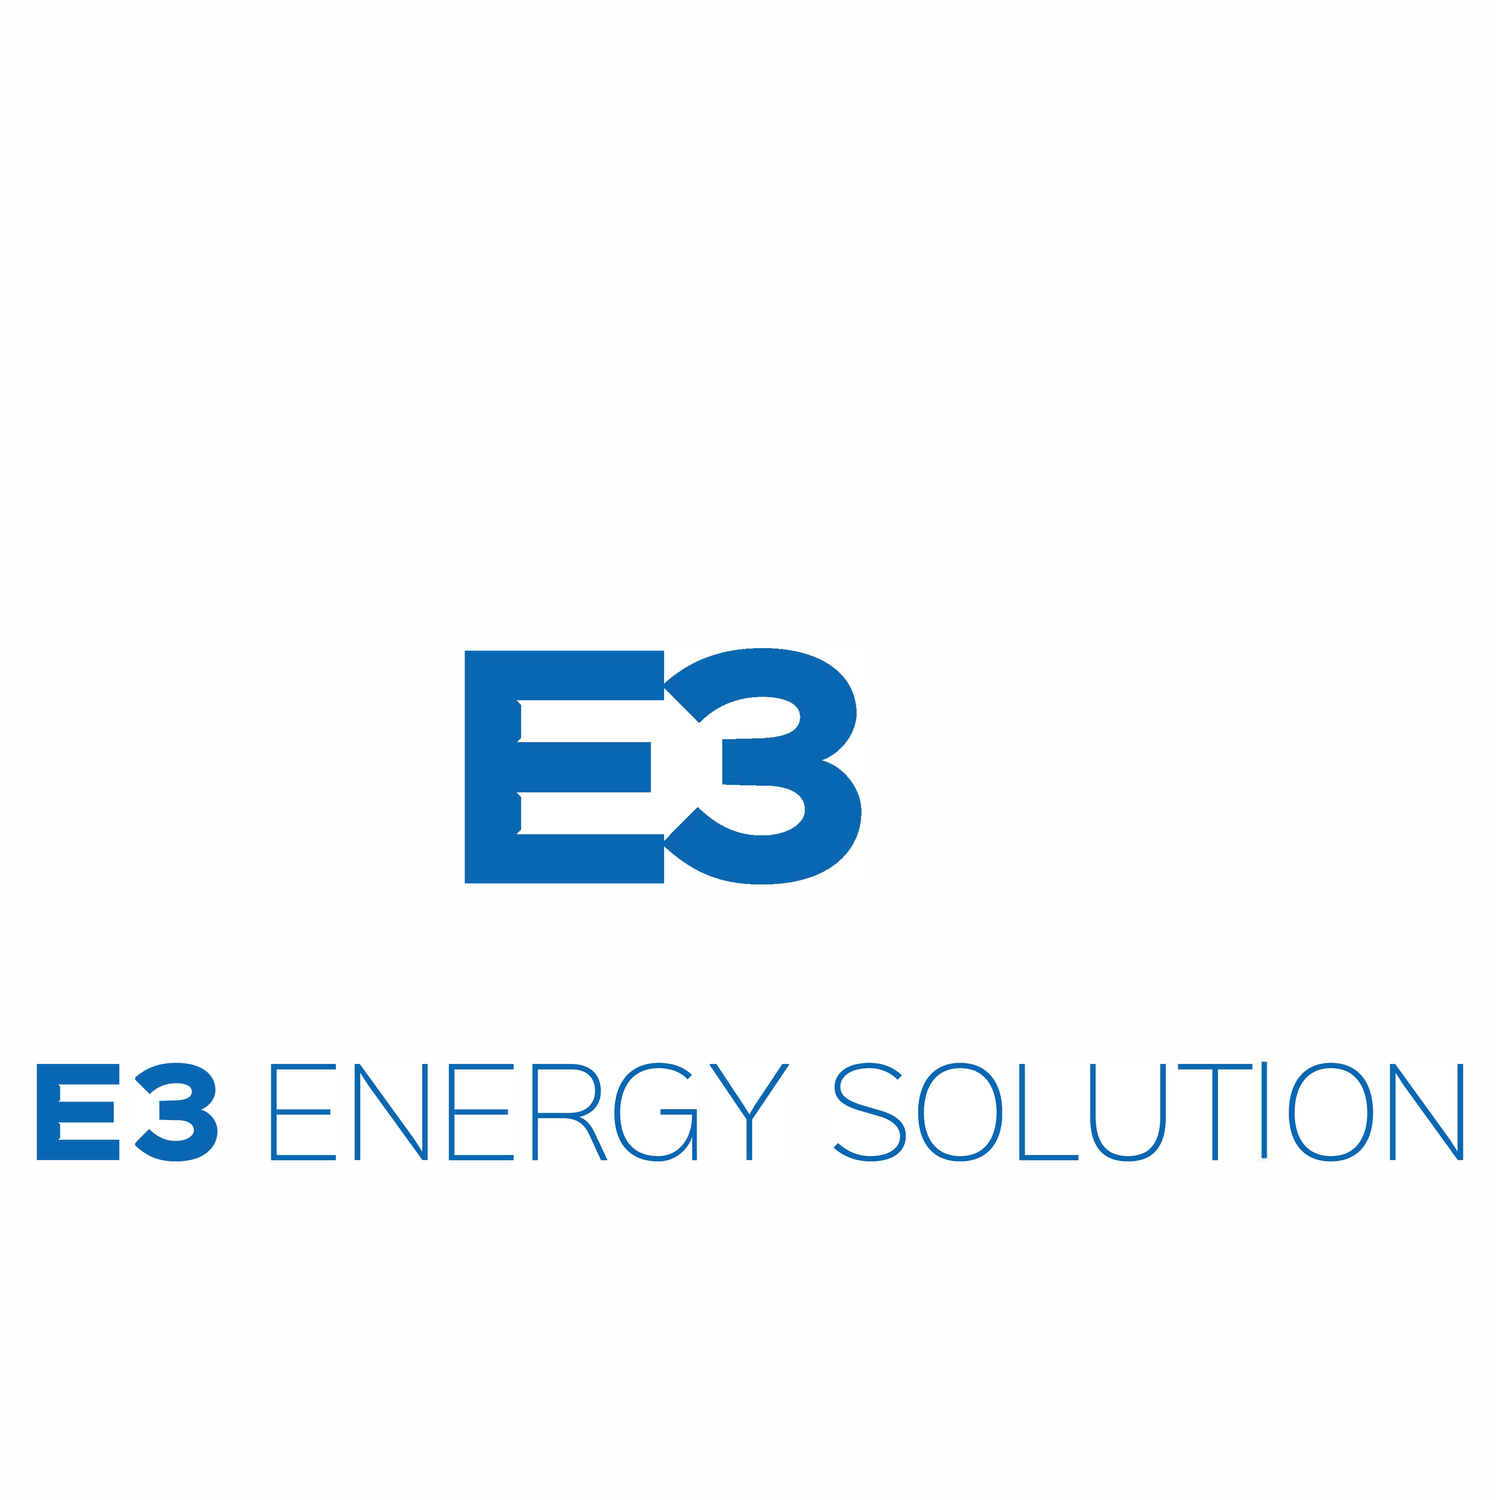 E3 Energy Solution